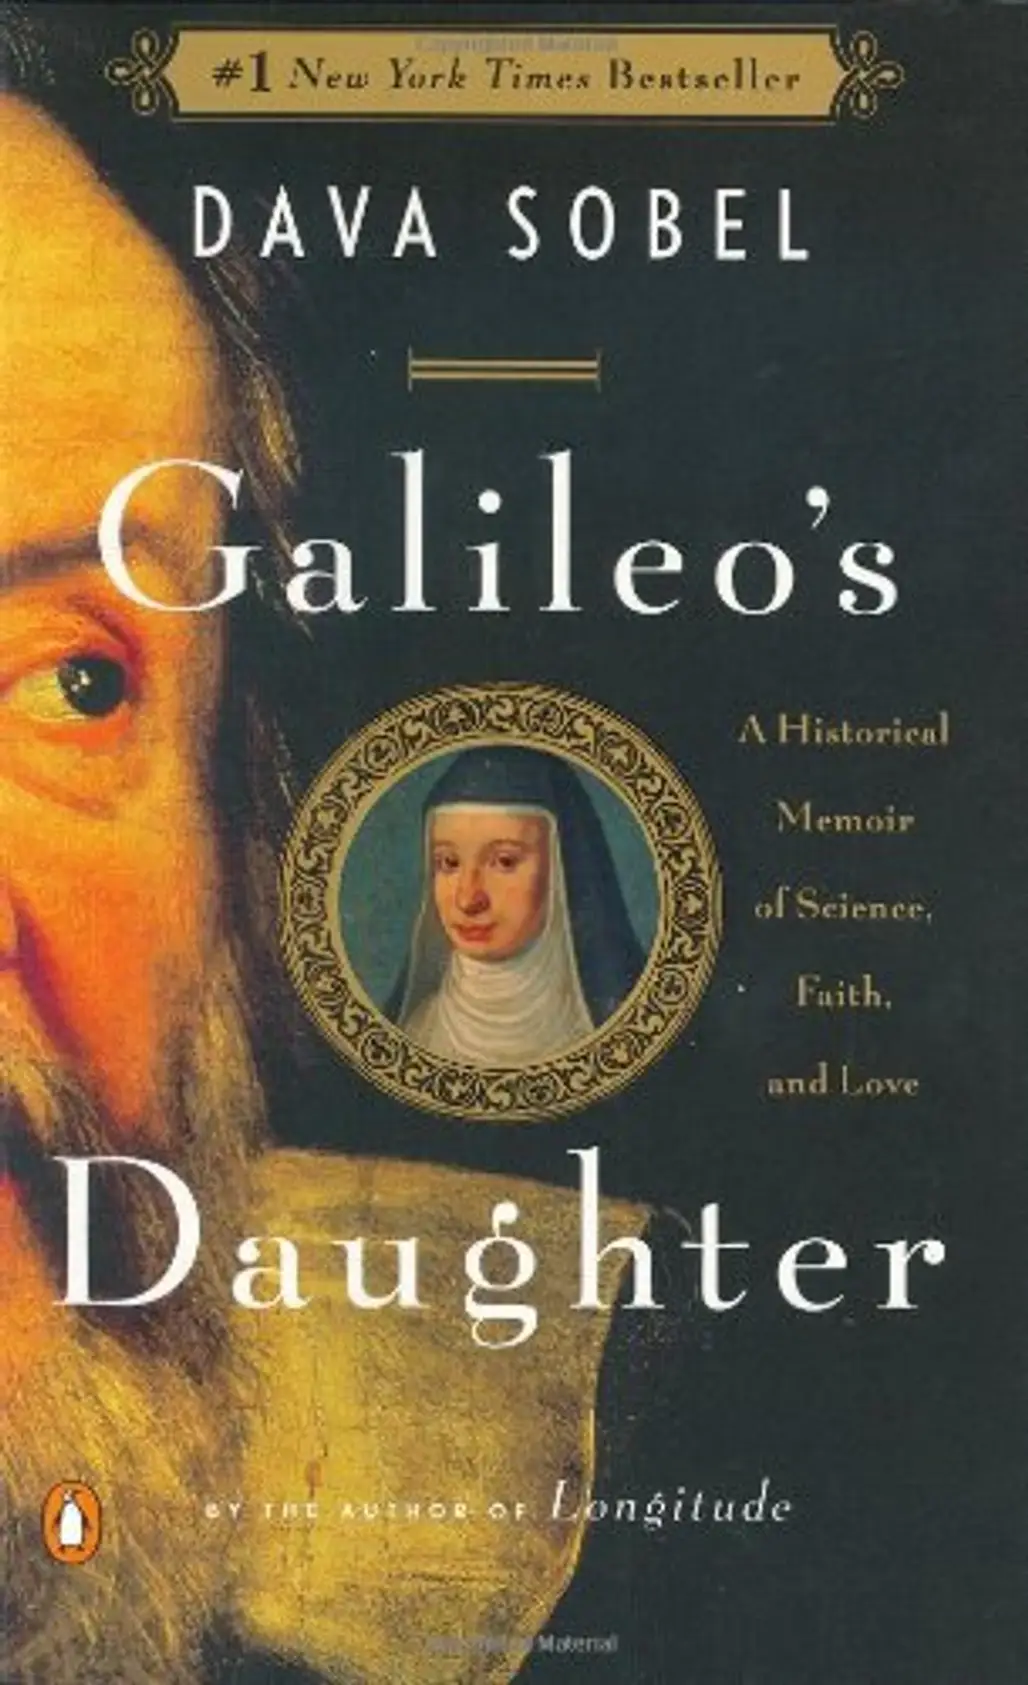 “Galileo’s Daughter” by Dava Sobel